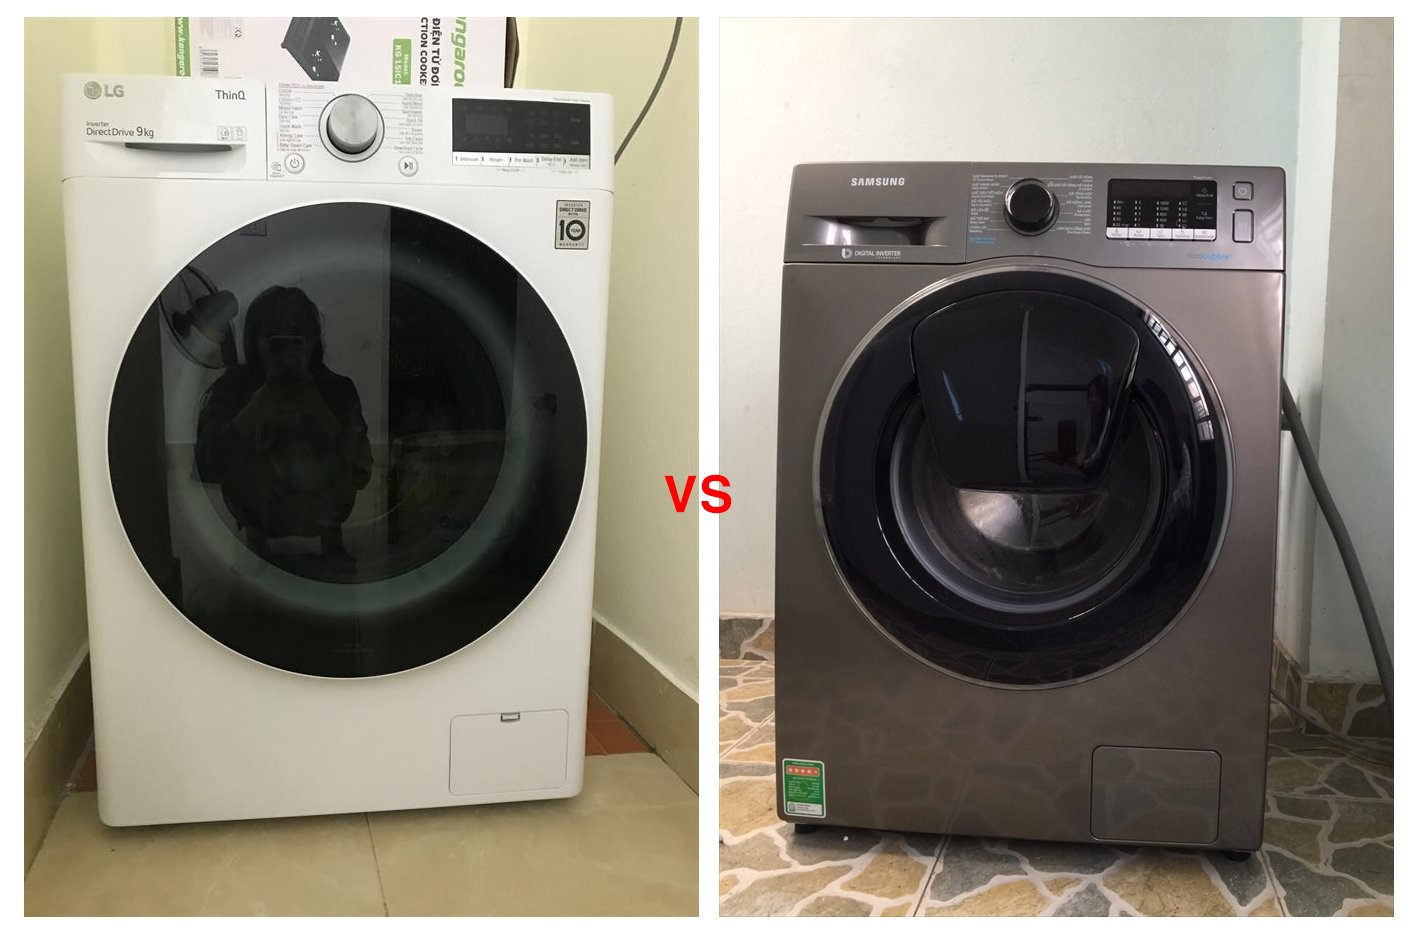 So sánh máy giặt LG Inverter FV1409S4W và Samsung WW90K54E0UX/SV, loại nào tốt hơn?